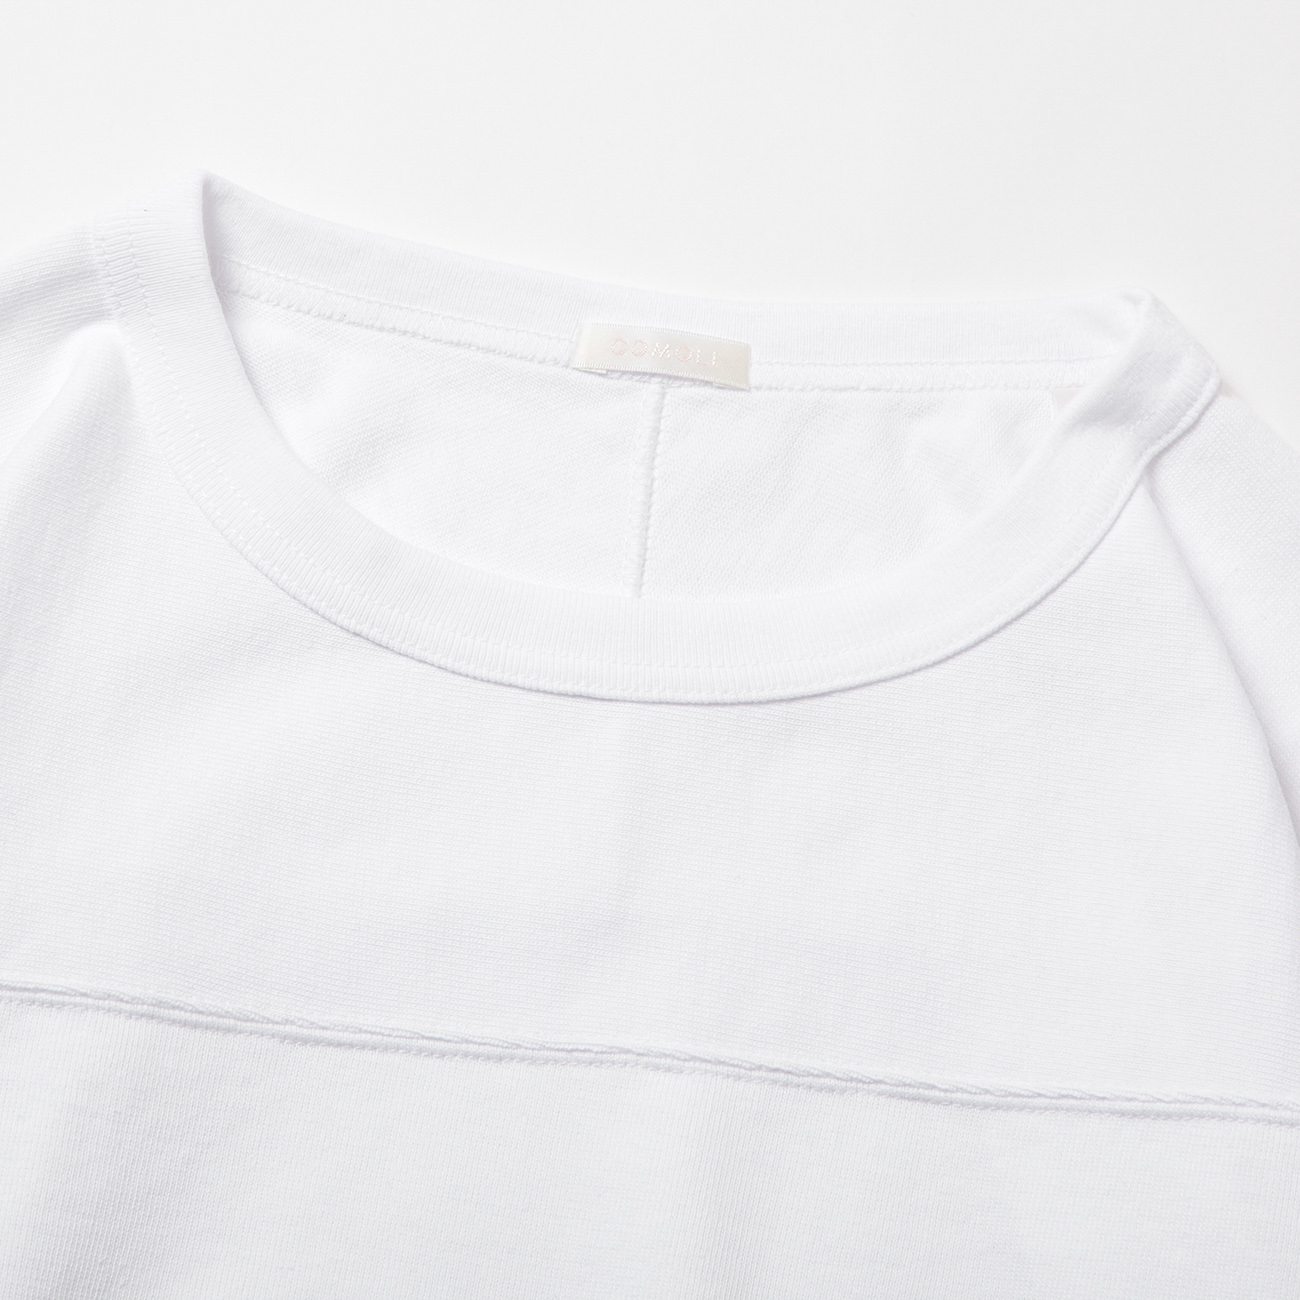 COMOLI / コモリ   フットボールTシャツ   White   通販   正規